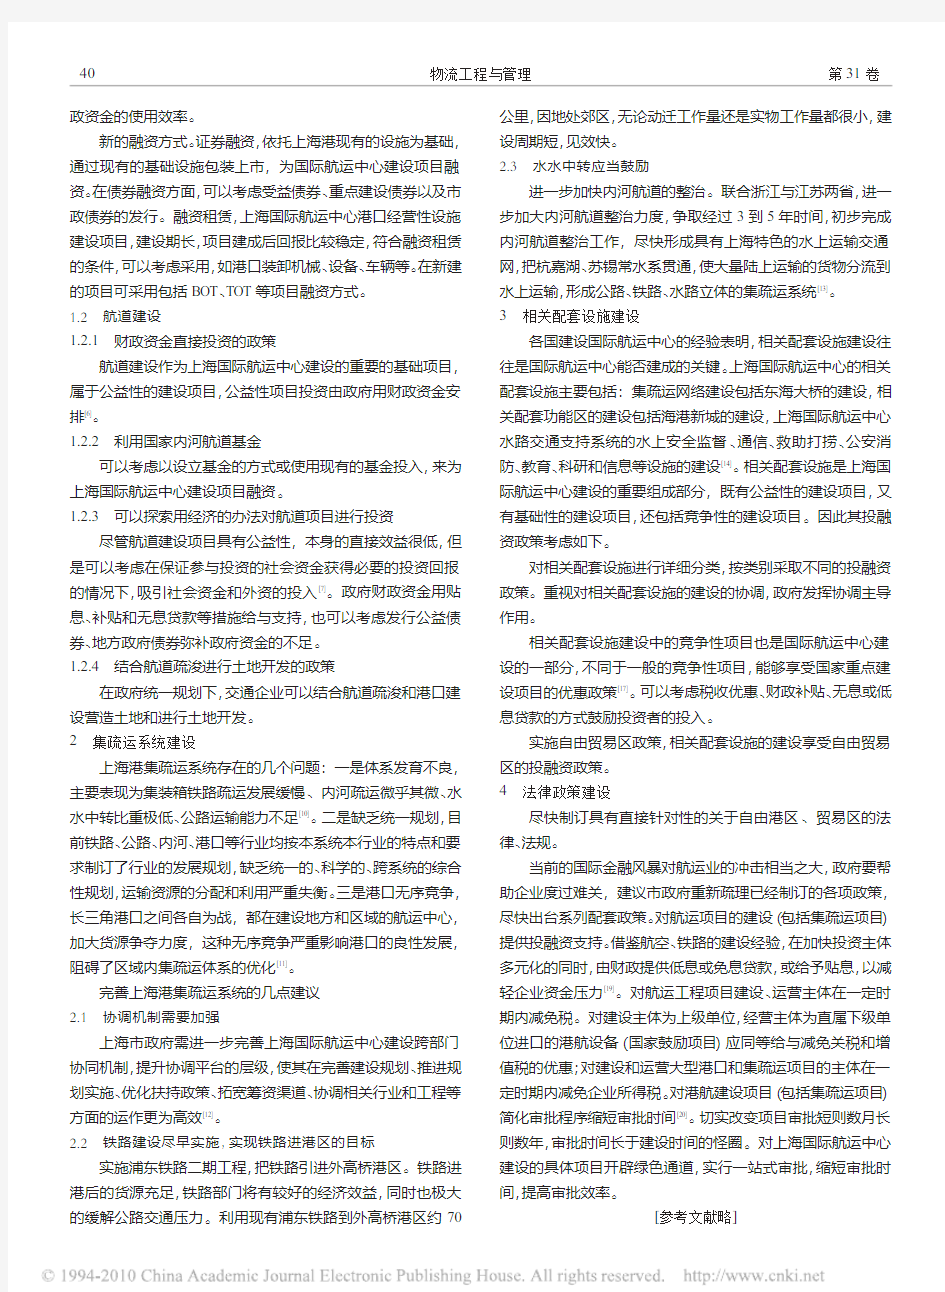 上海国际航运中心建设模式研究_王勇